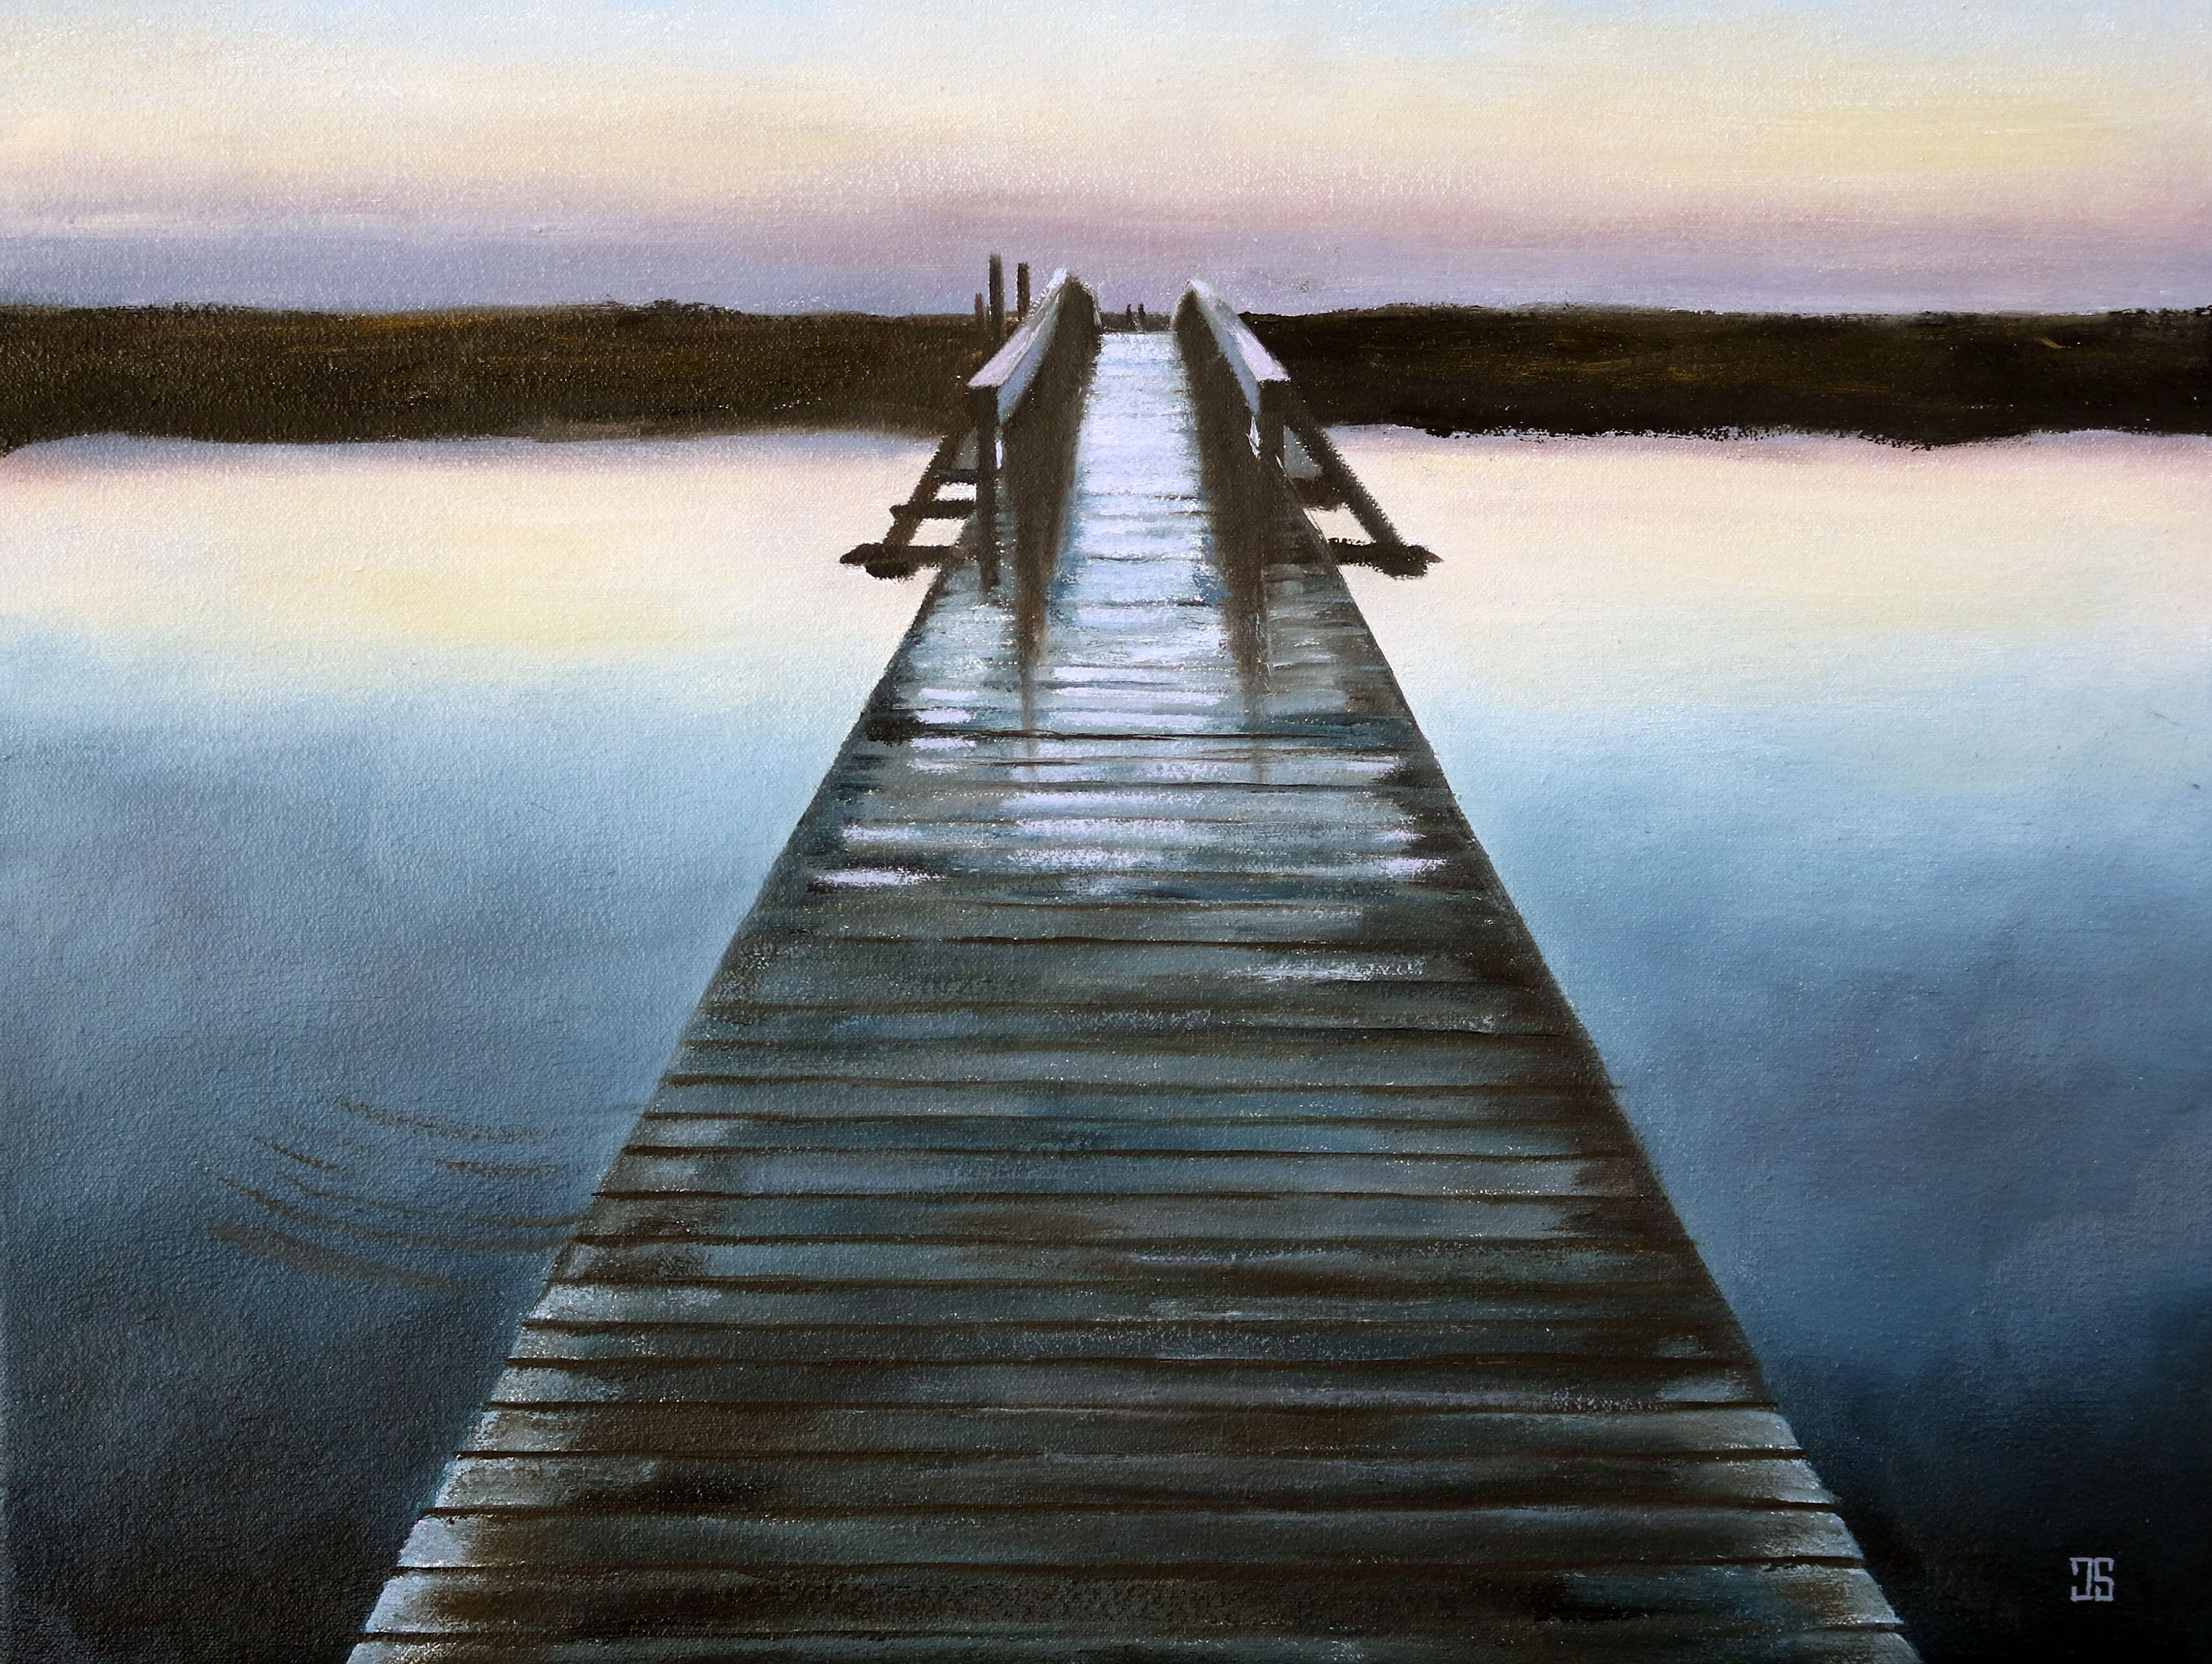 Oil painting "Sandwich Boardwalk at Dawn" by Jeffrey Dale Starr